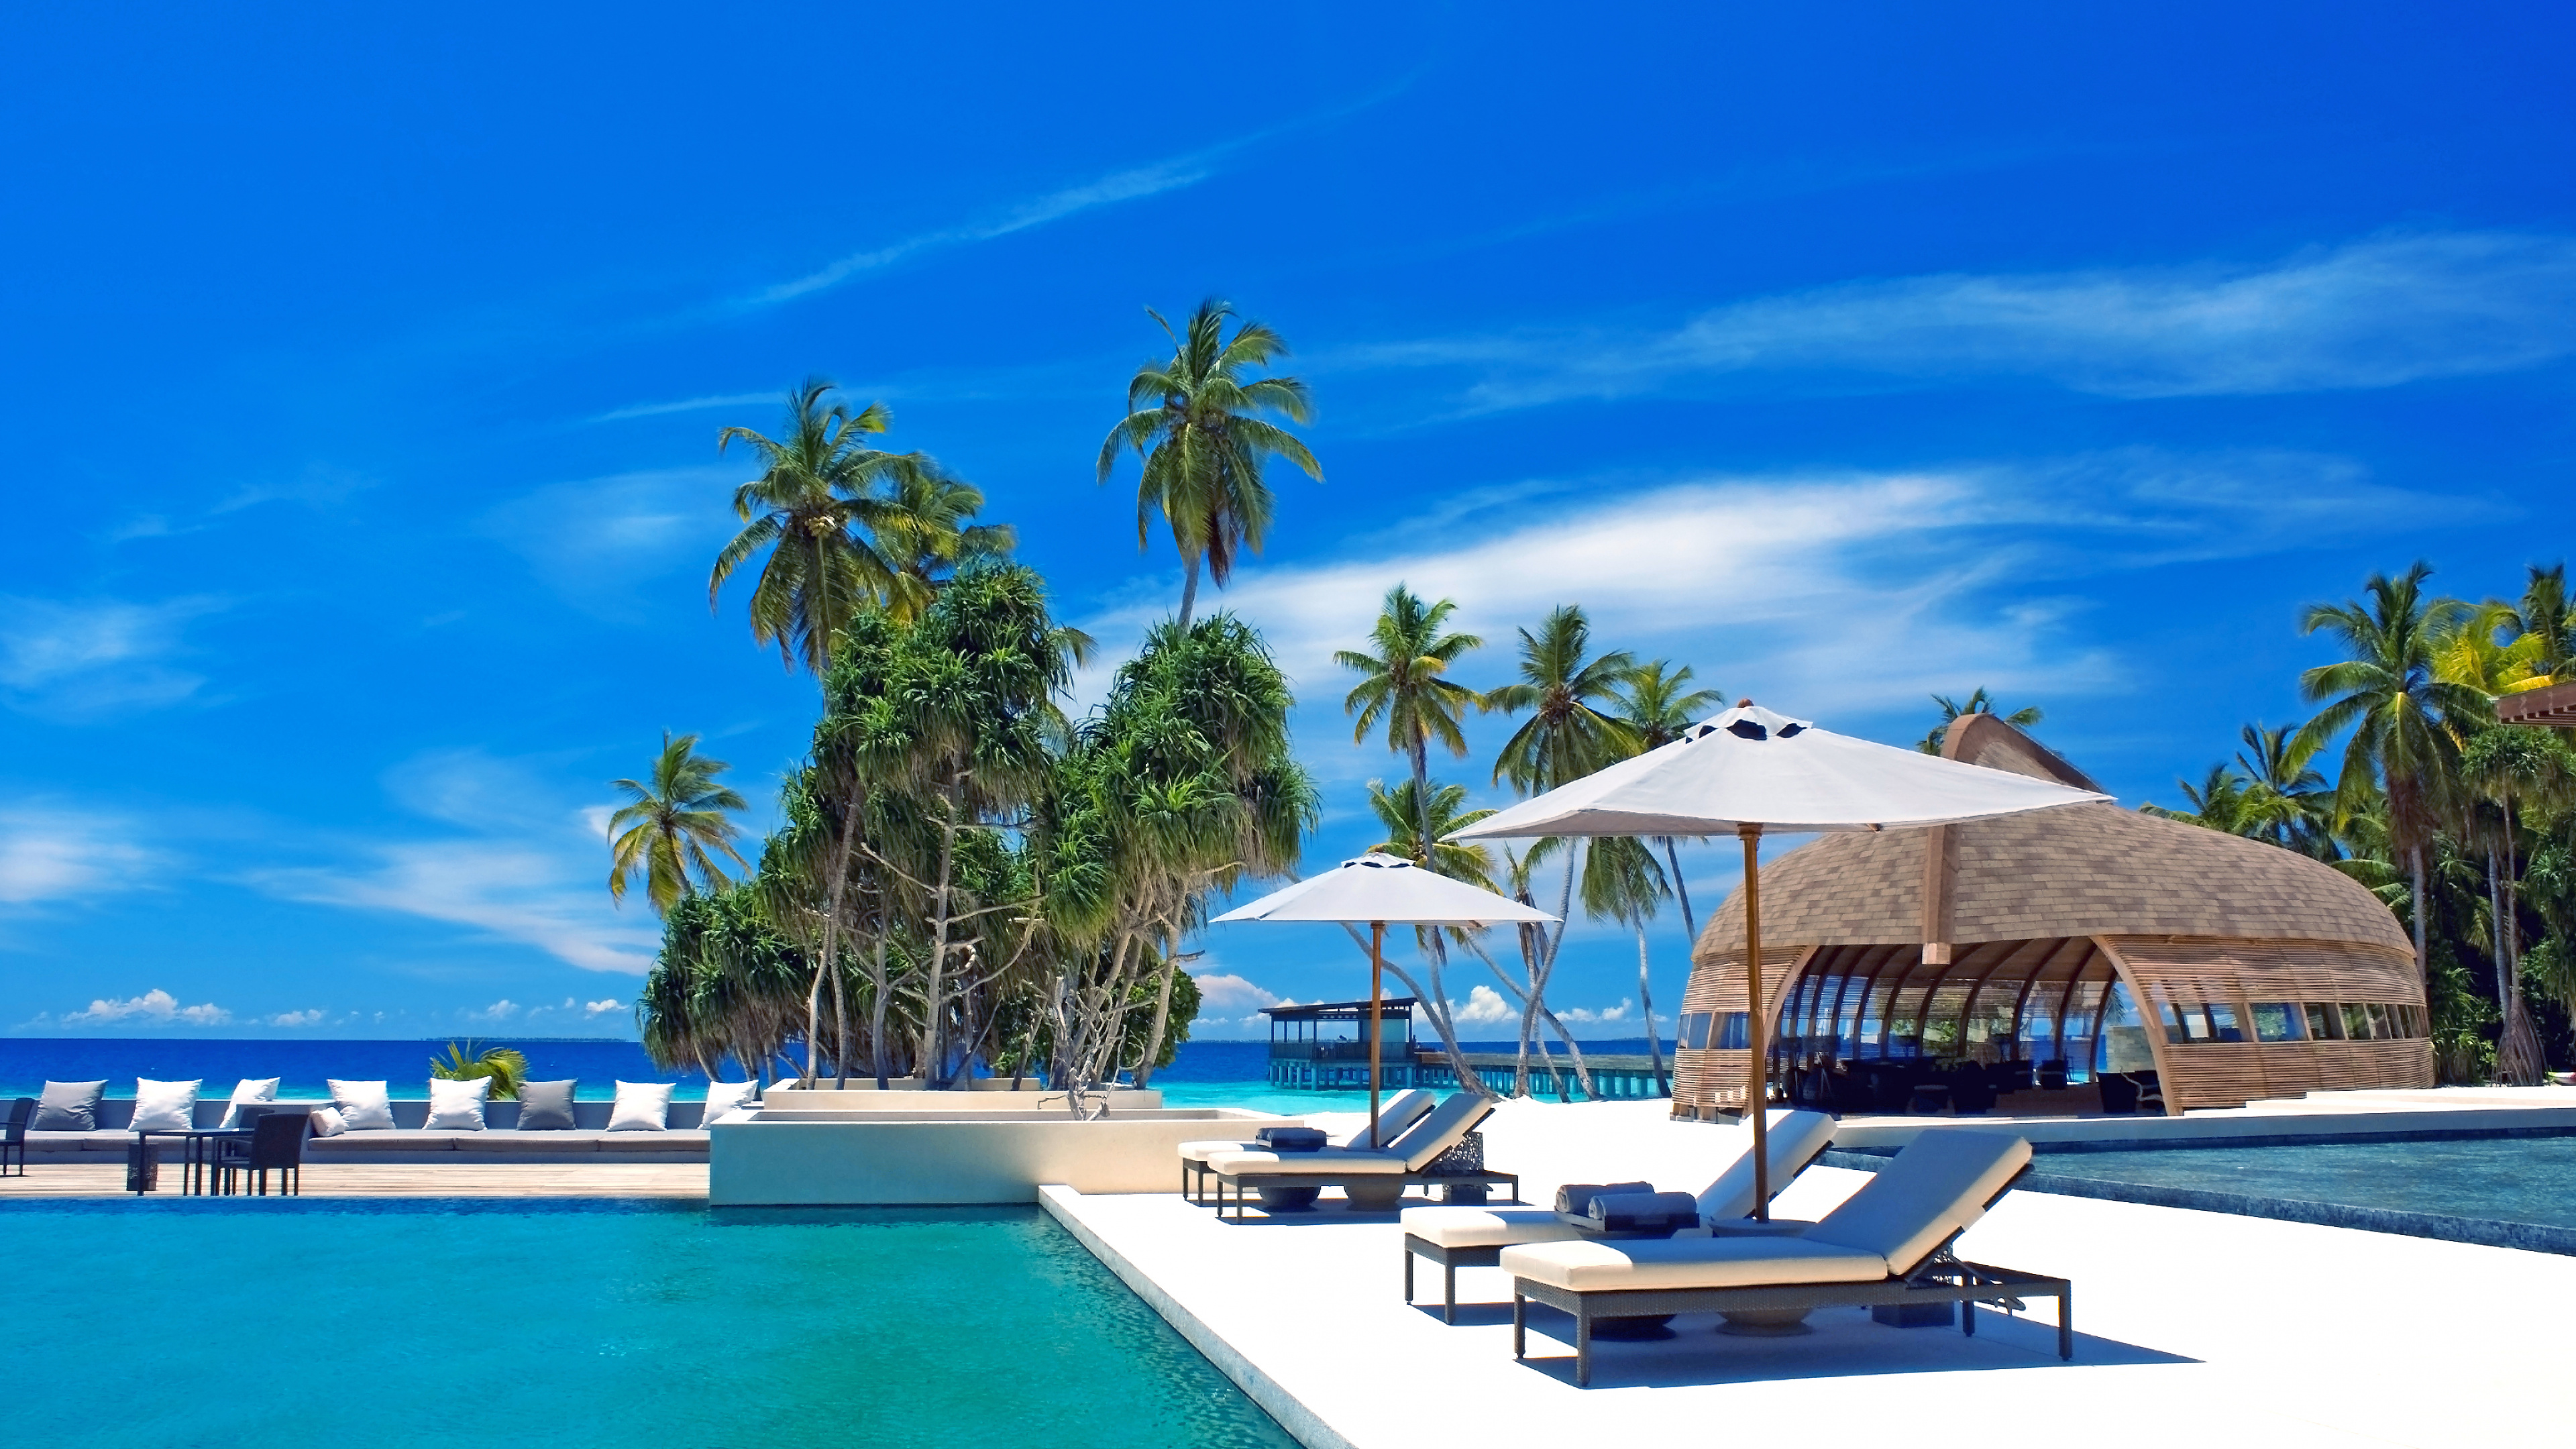 Обои Парк Hyatt Hadahaa Мальдивы, путешествие, прибежище, Алила отели и курорты, свойство в разрешении 3840x2160